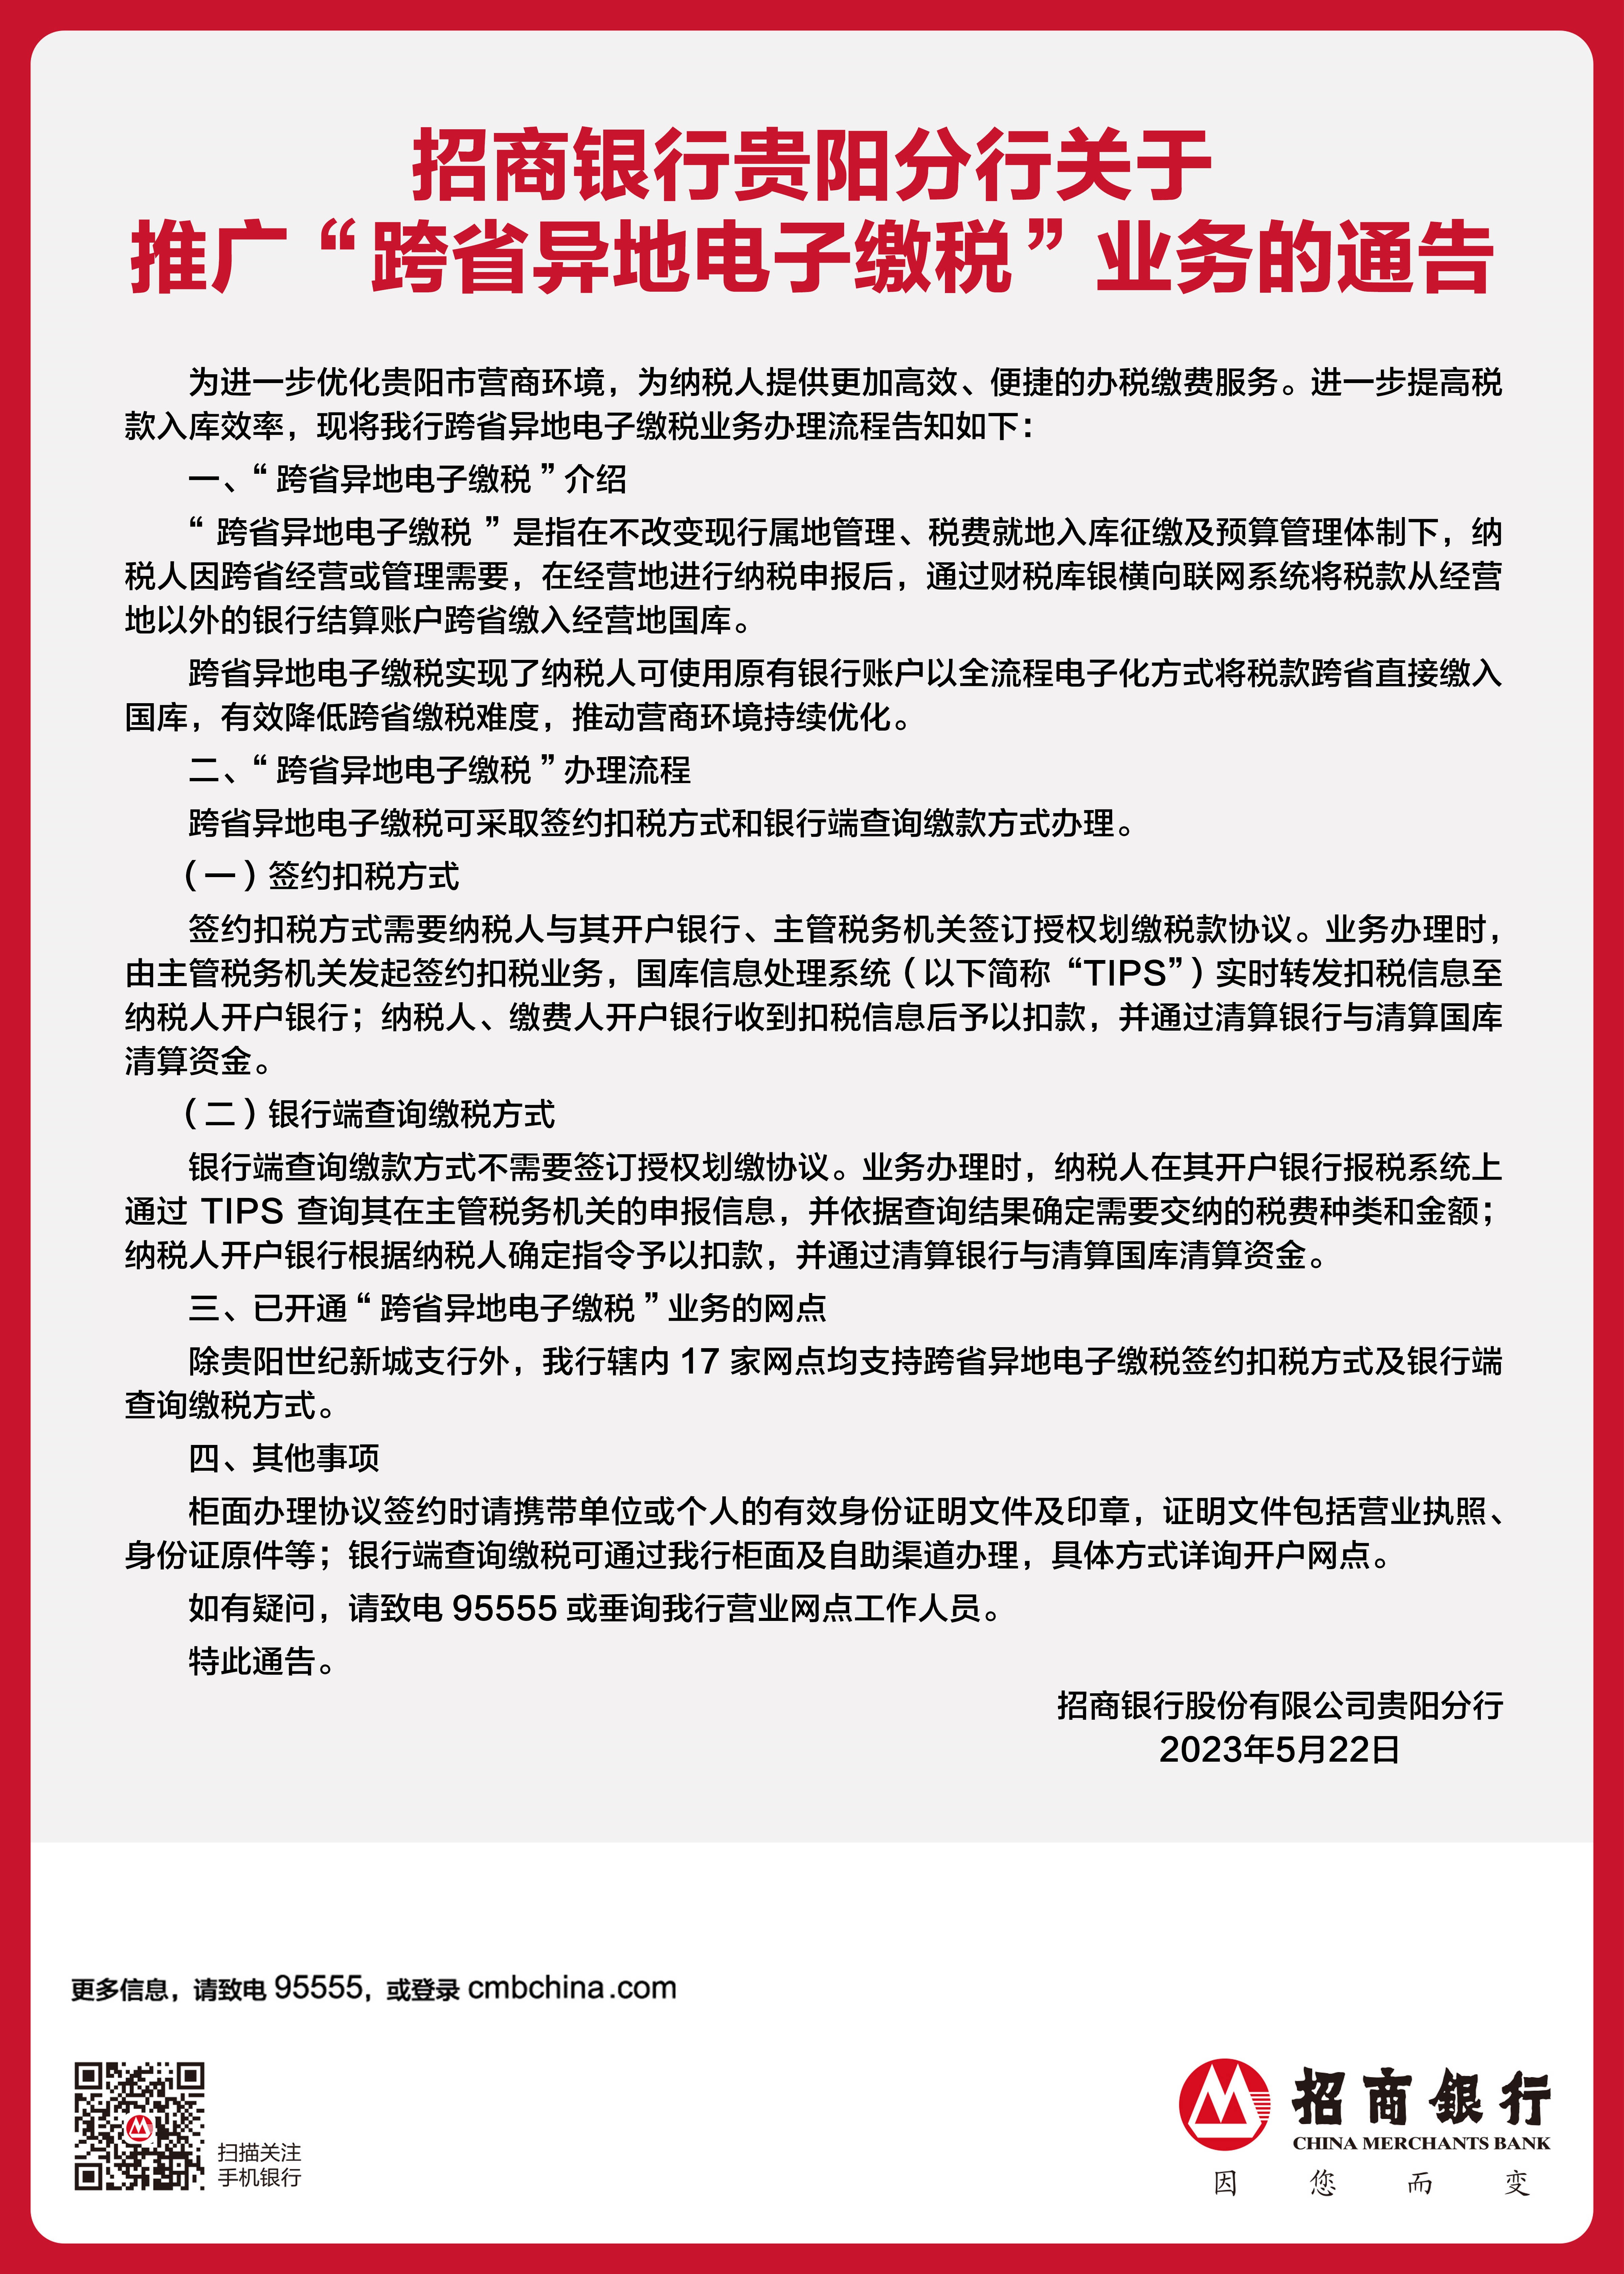 招商银行贵阳分行关于推广“跨省异地电子缴税”业务的通告.jpg